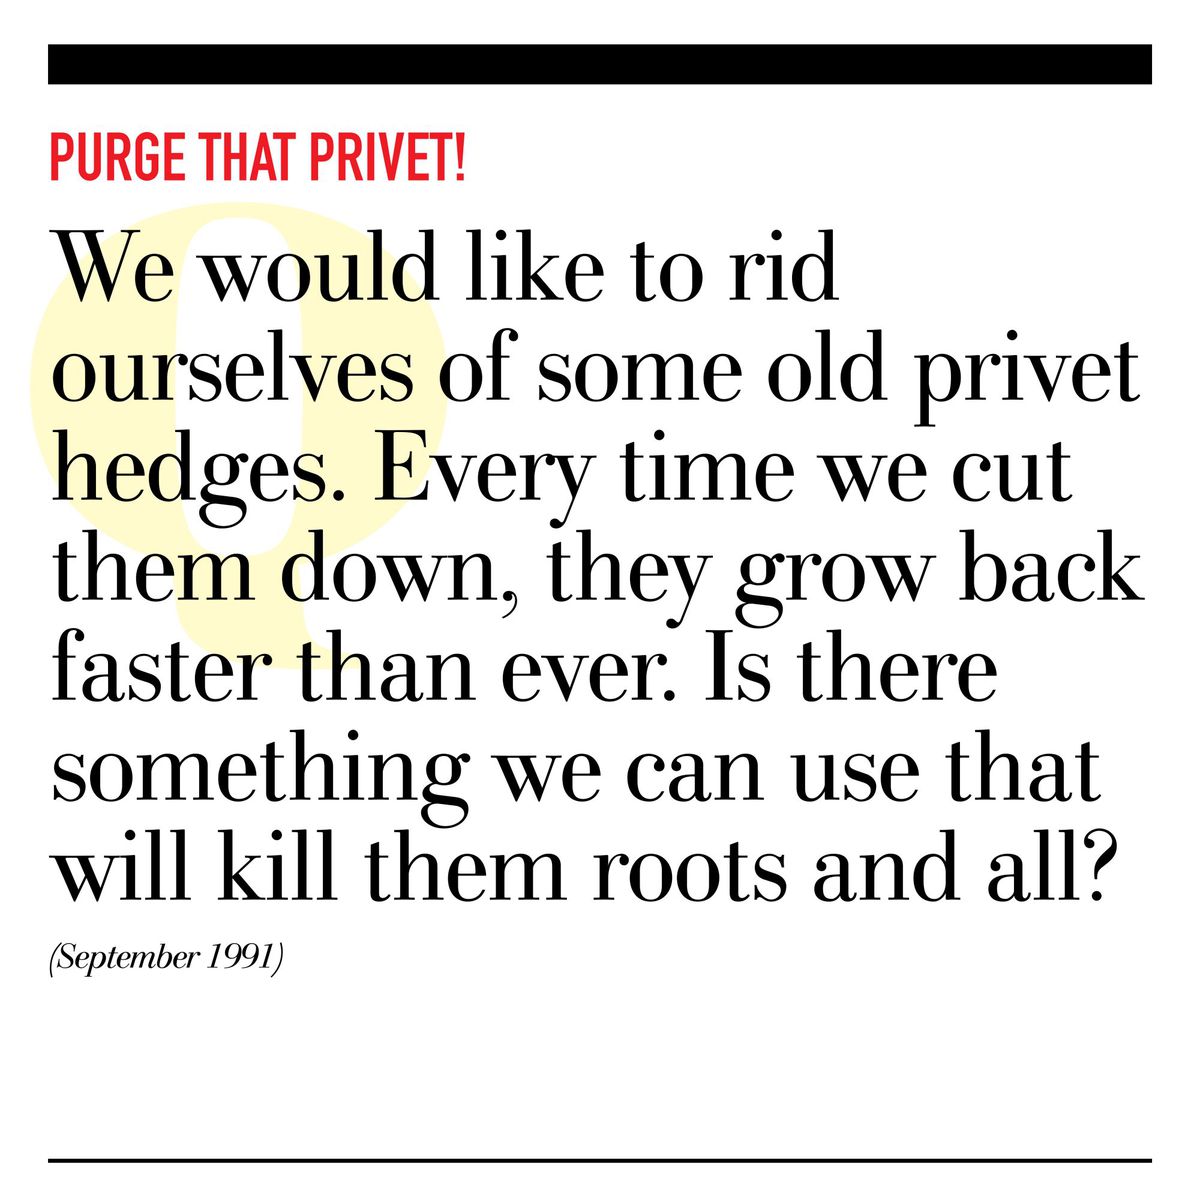 Purge That Privet!